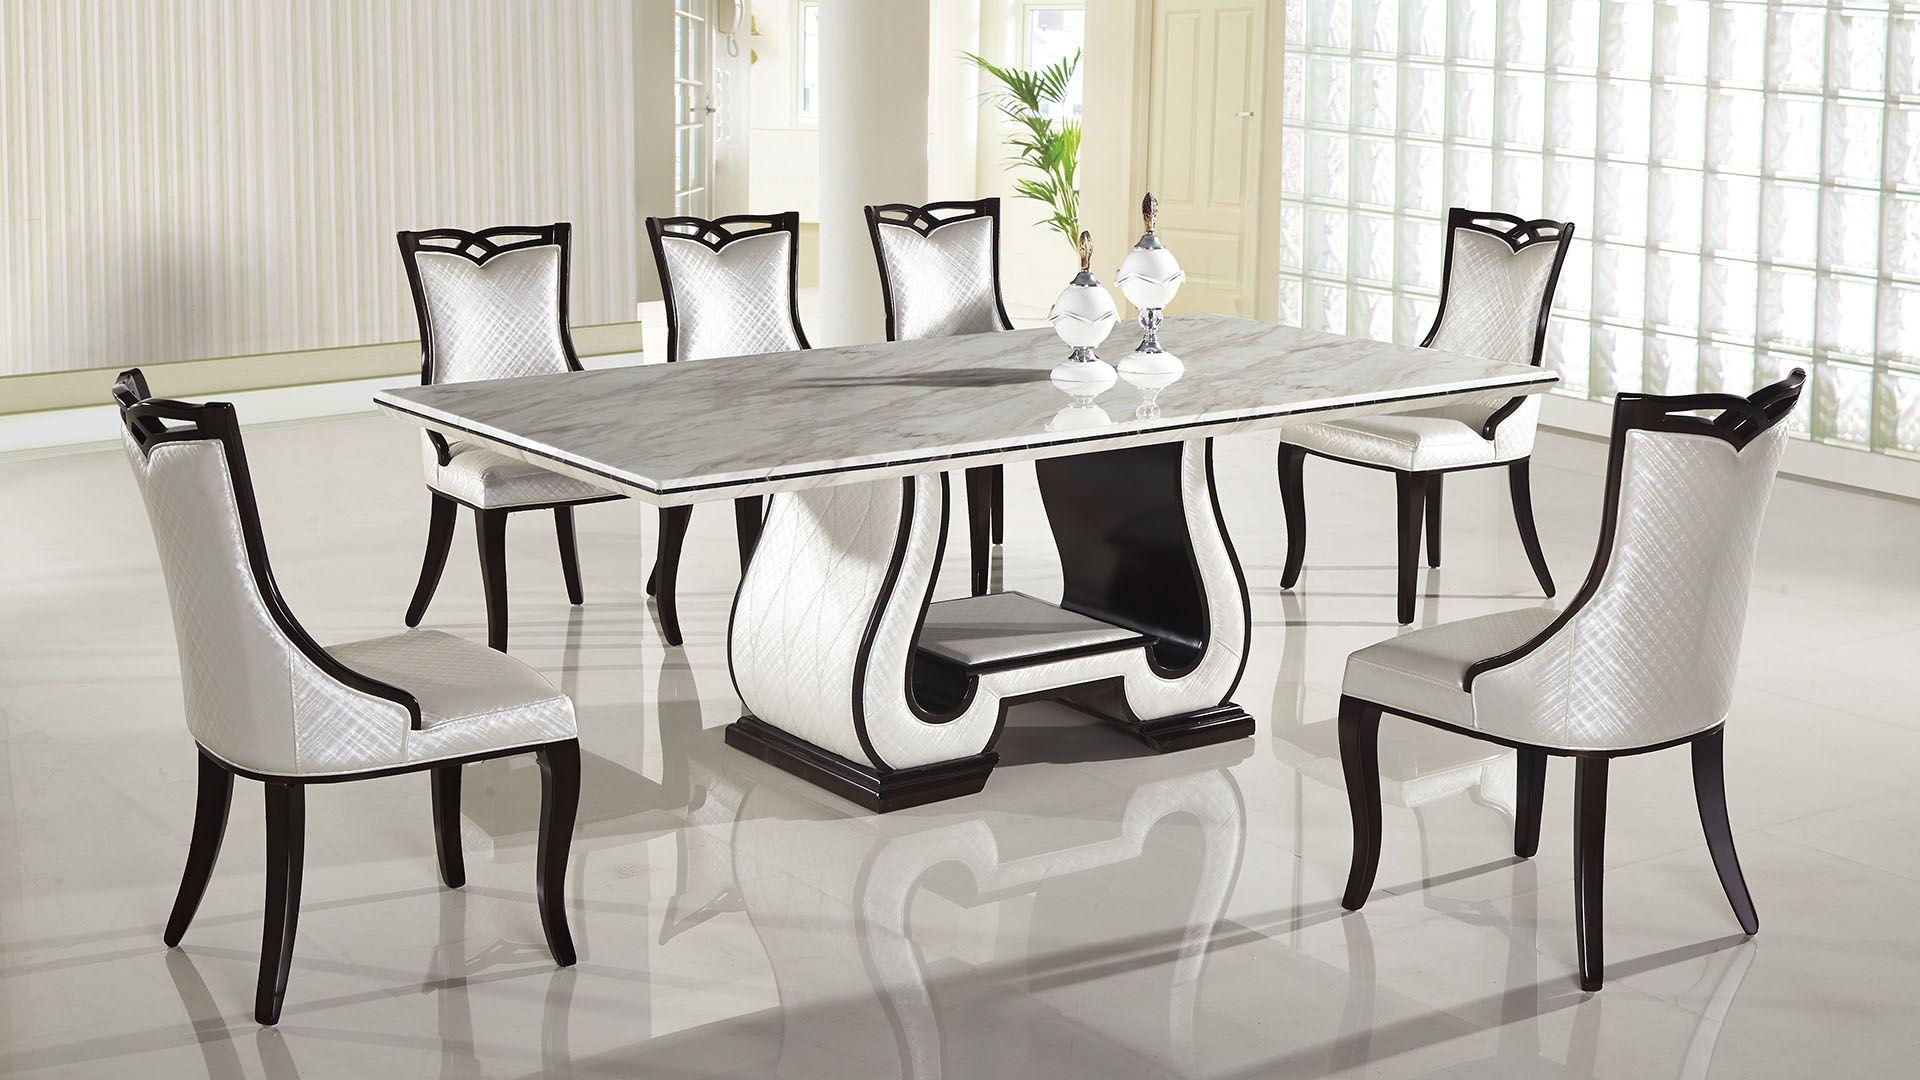 Modern Dining Table DT-H901 DT-H901 in White, Black 